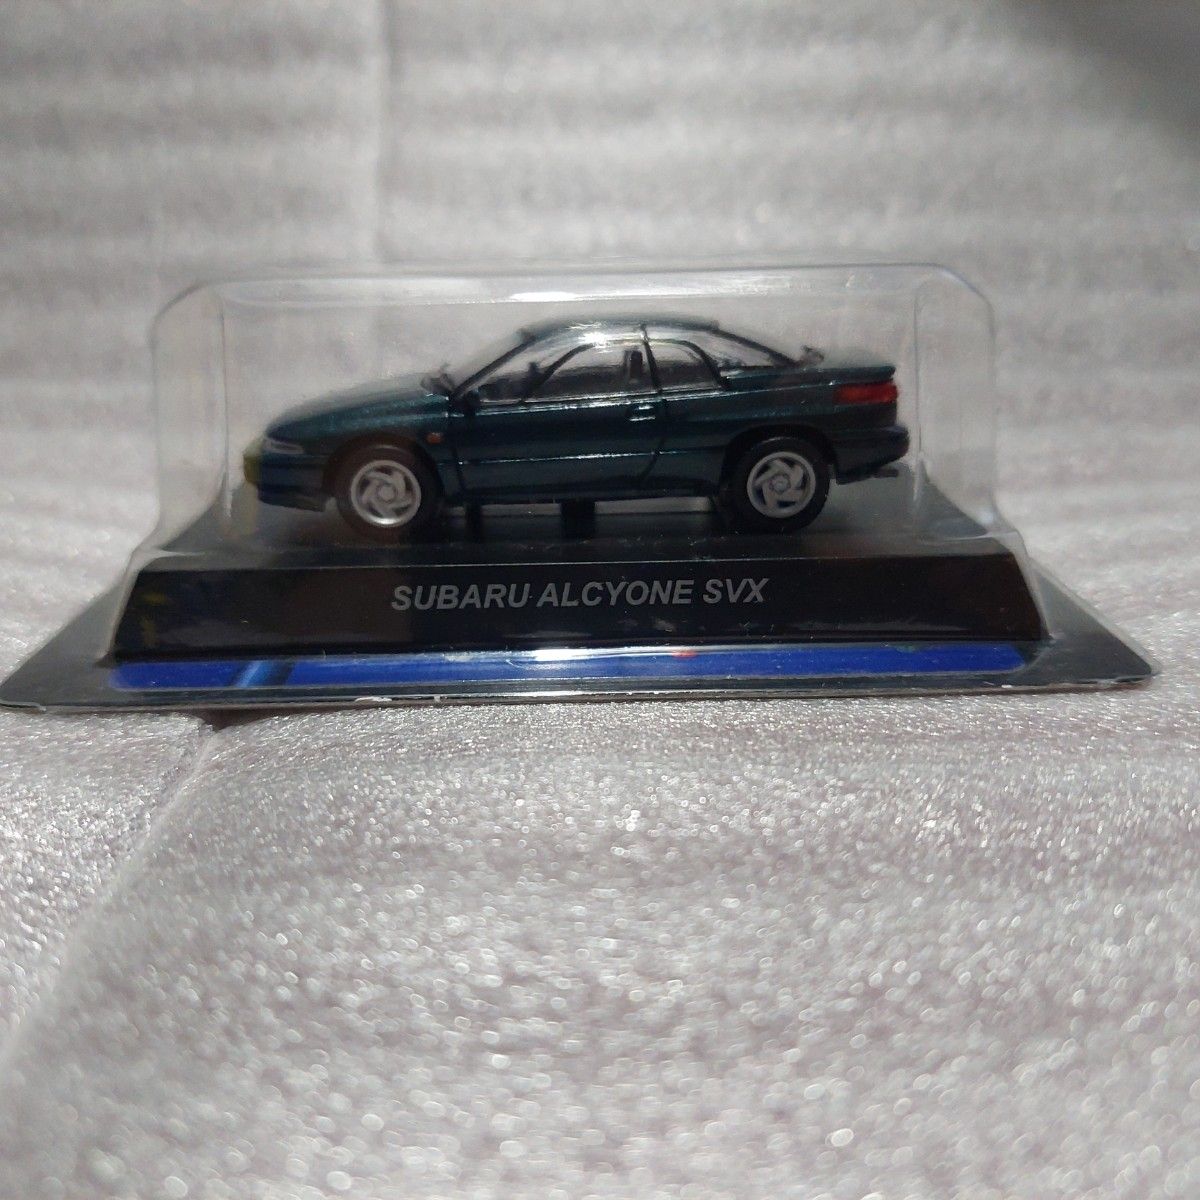 Subaru Alcyone SVX Scale 1/64 